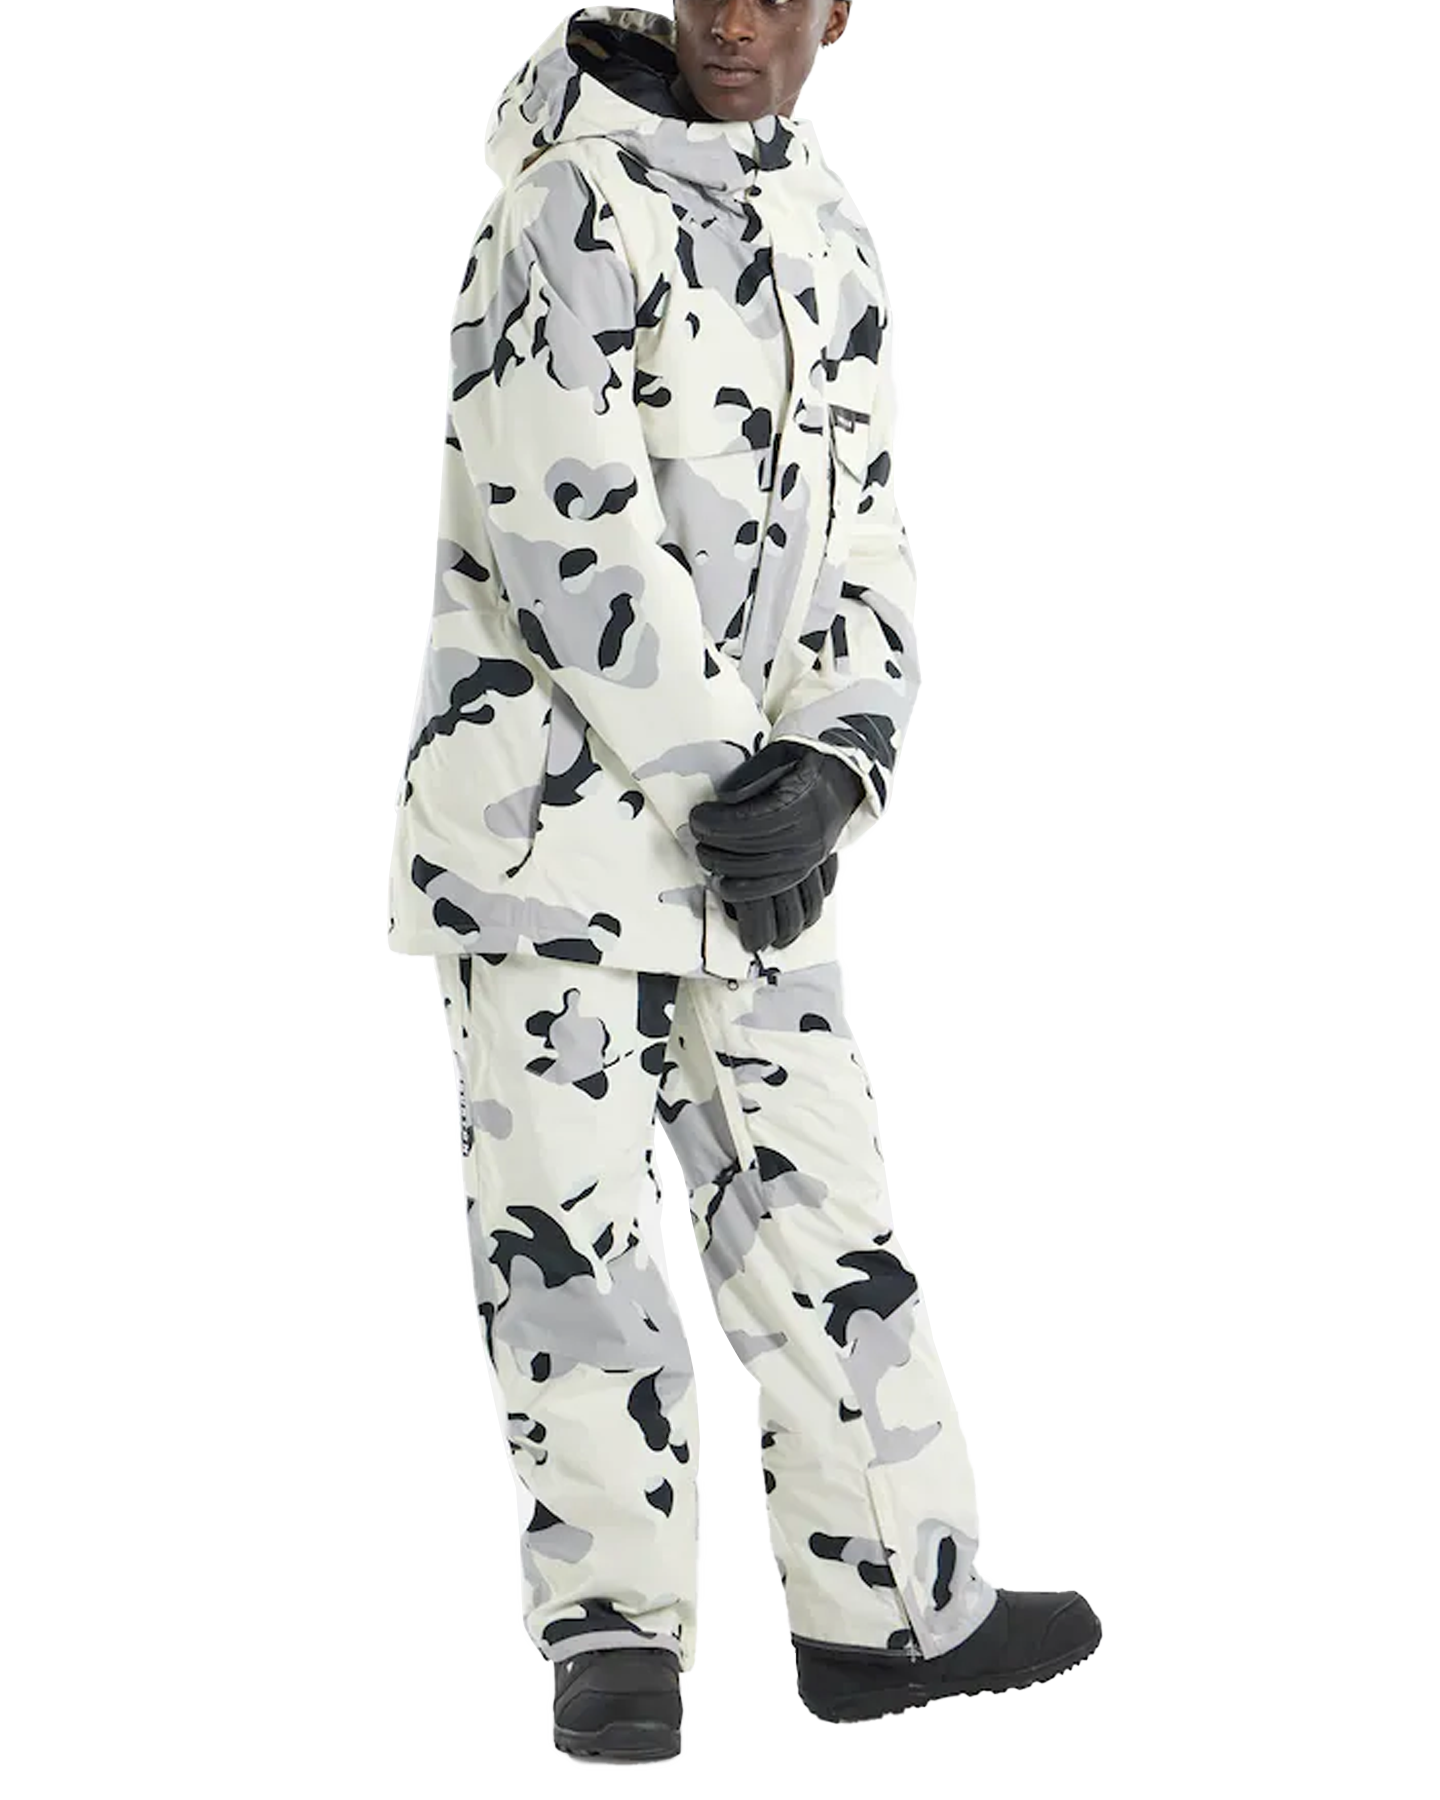 Burton Men's Covert 2.0 Snow Jacket - Stout White Cookie Camo Men's Snow Jackets - Trojan Wake Ski Snow